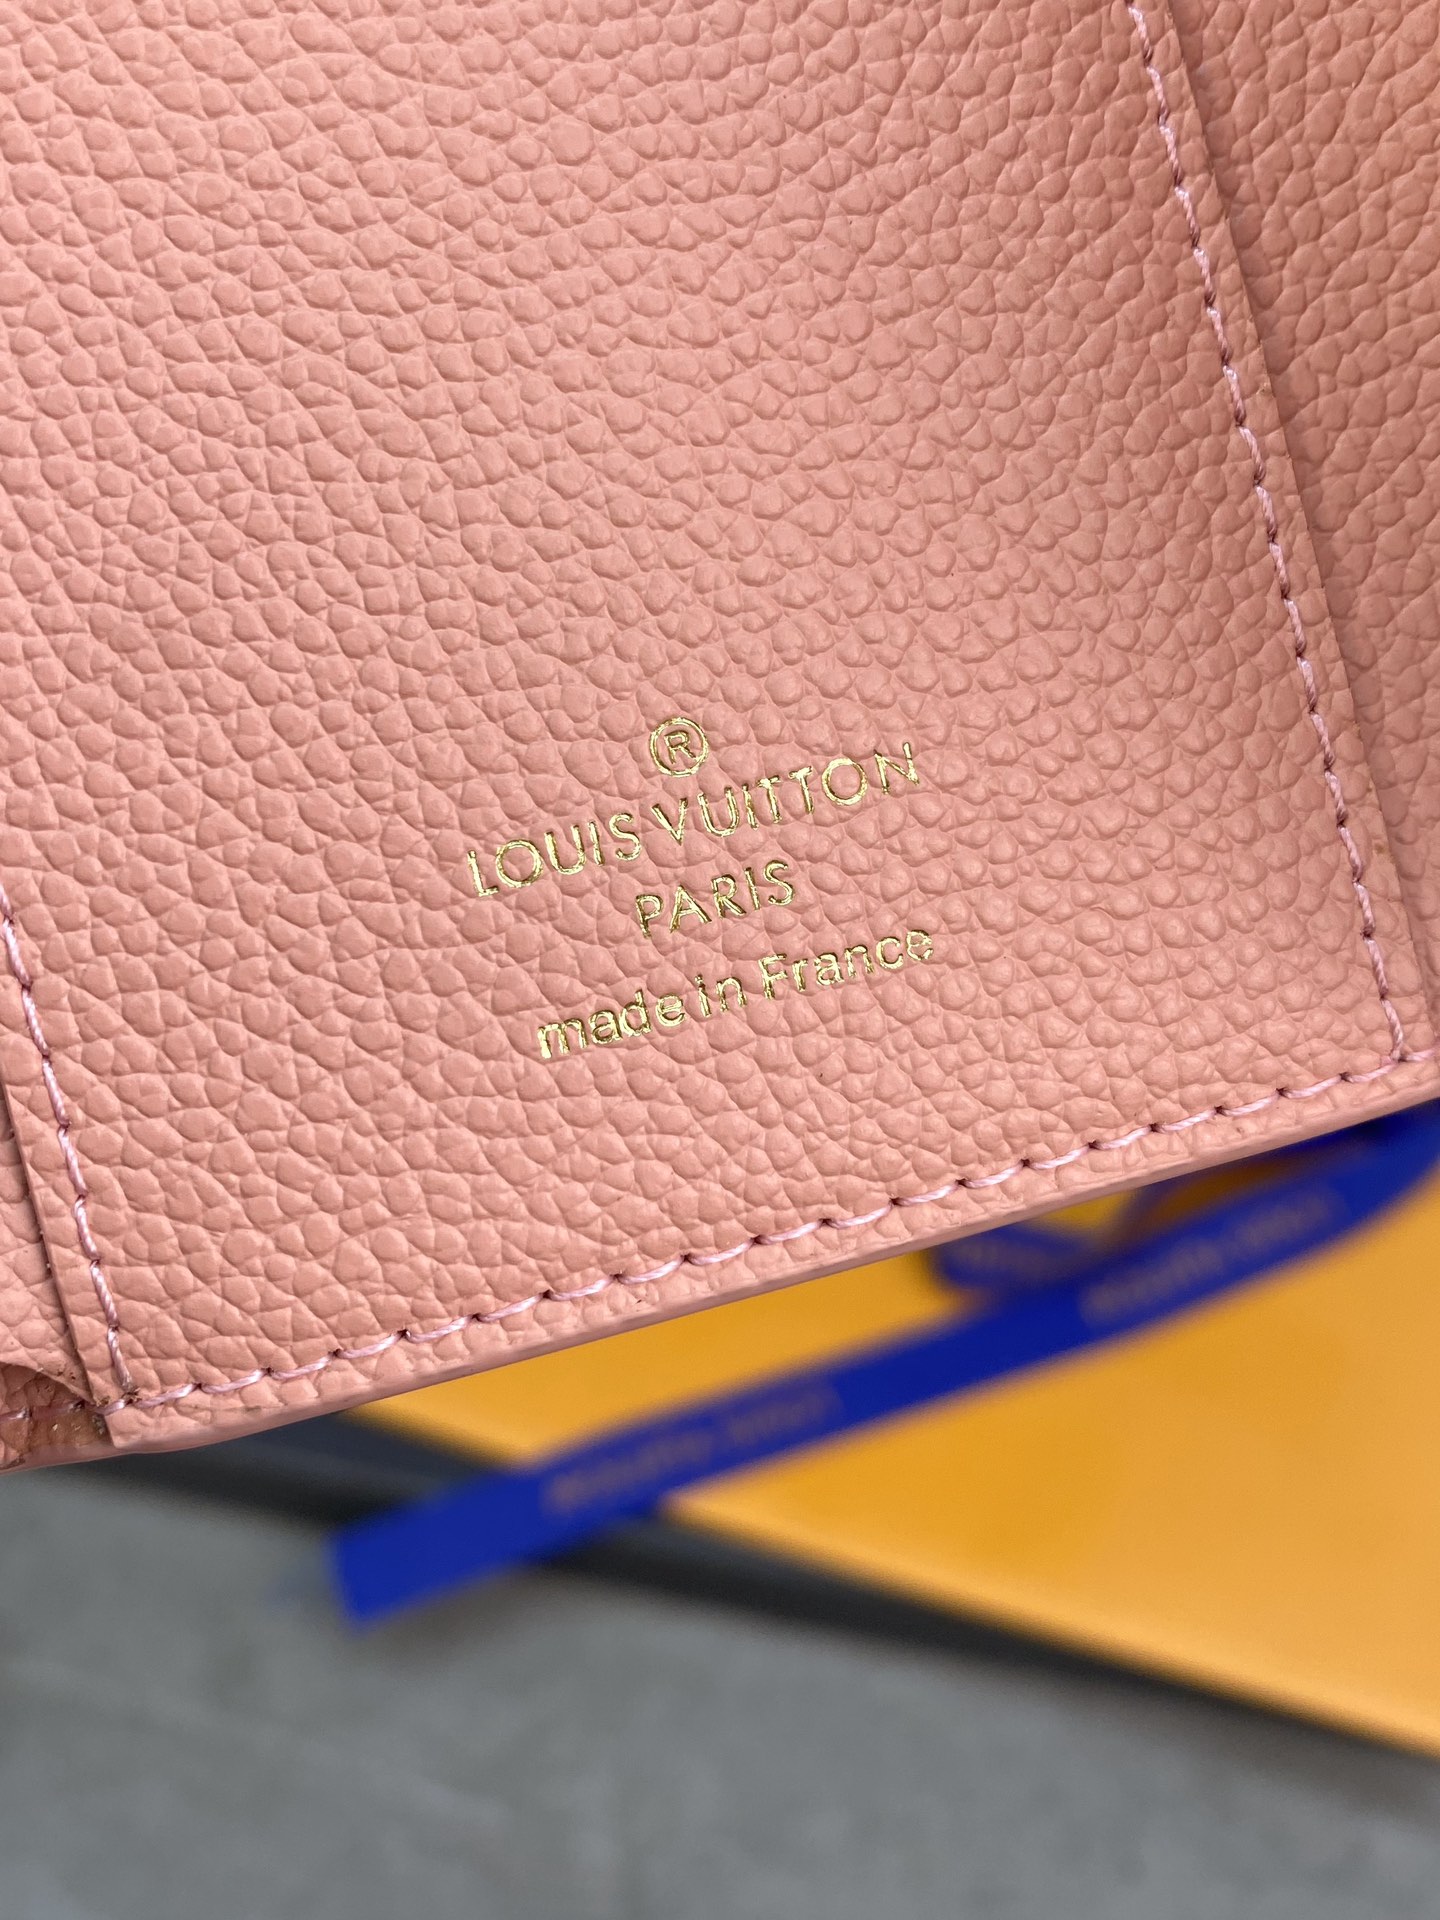 最新作 人気定番 爆買いルイウ ゙ィトン 財布偽物  柔らかなモノグラム  美しい配色_5